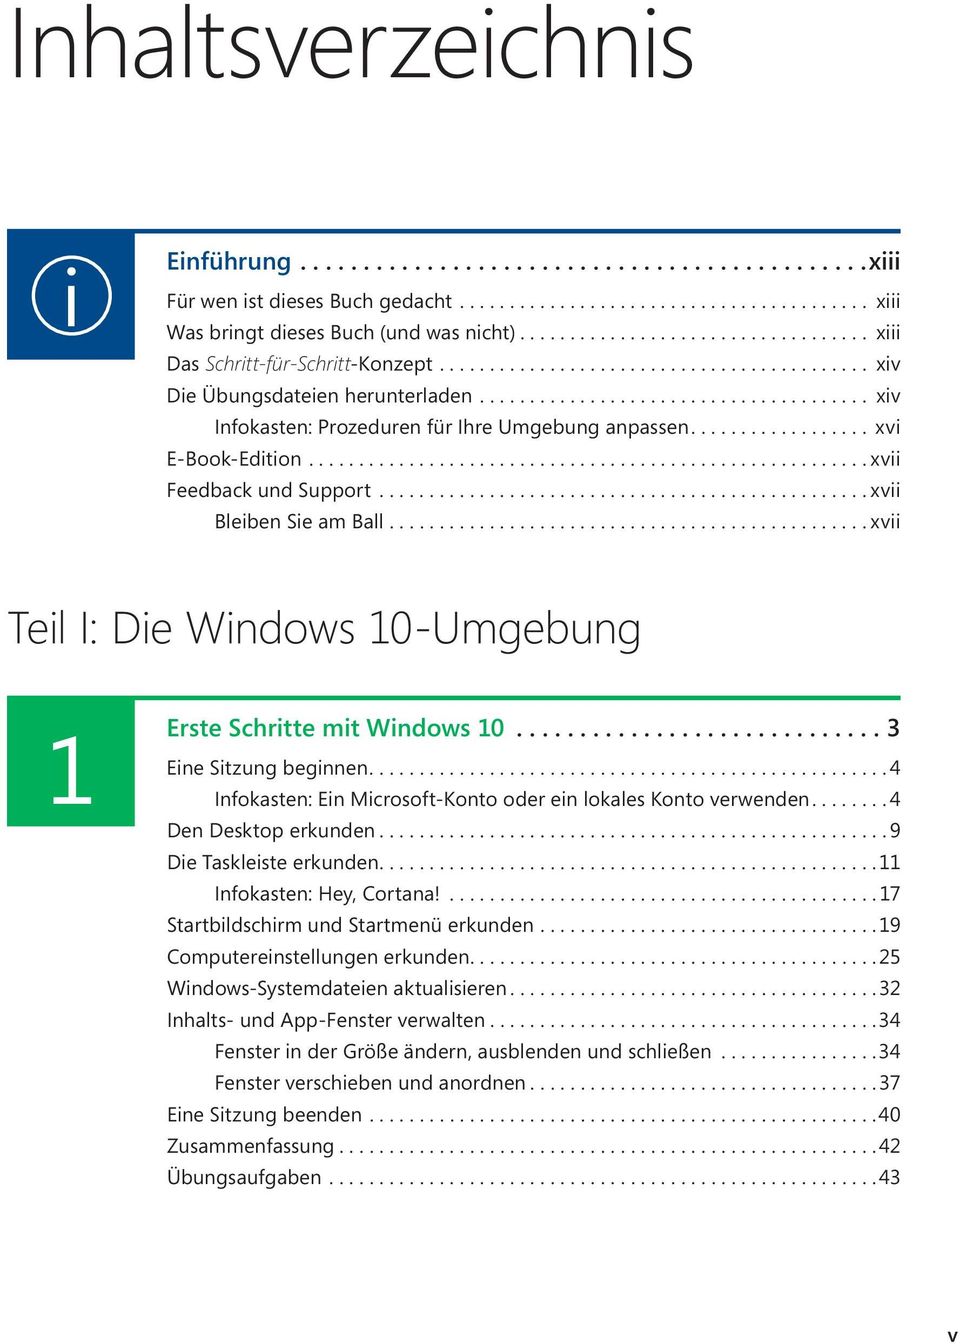 ..xvii Teil I: Die Windows 10-Umgebung 1 Eine Erste Schritte mit Windows 10...3 Sitzung beginnen...4 Infokasten: Ein Microsoft-Konto oder ein lokales Konto verwenden...4 Den Desktop erkunden.